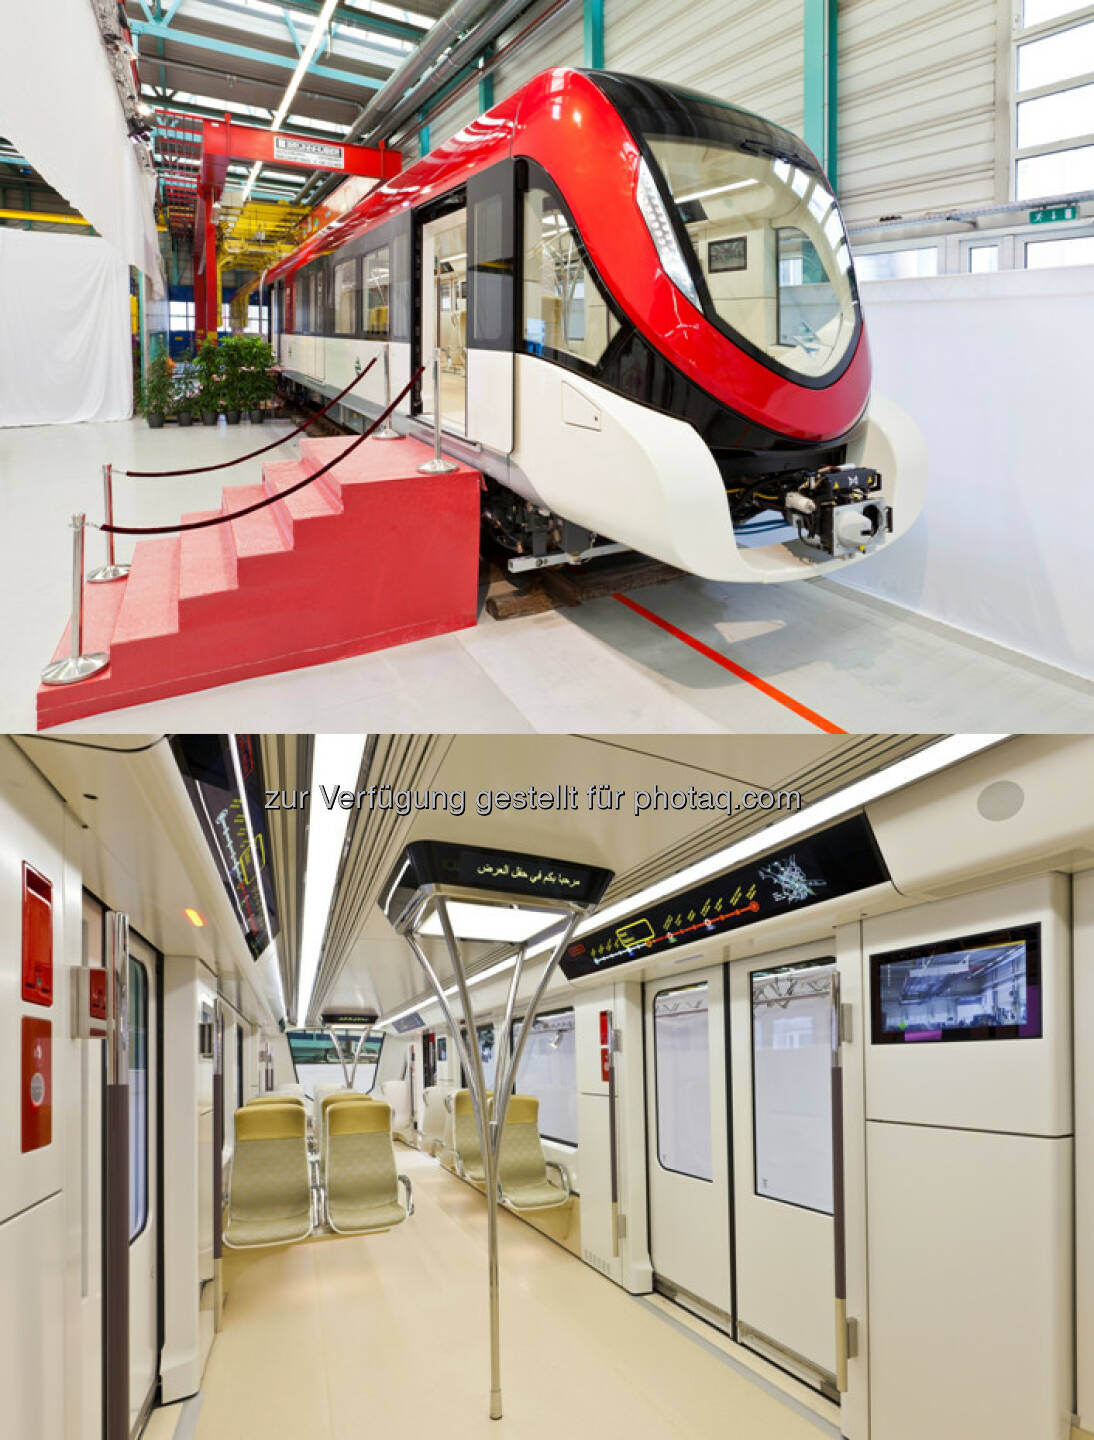 Metro für Riad, Typ Inspiro : Siemens präsentiert neue Metro für Riad : (c) Siemens